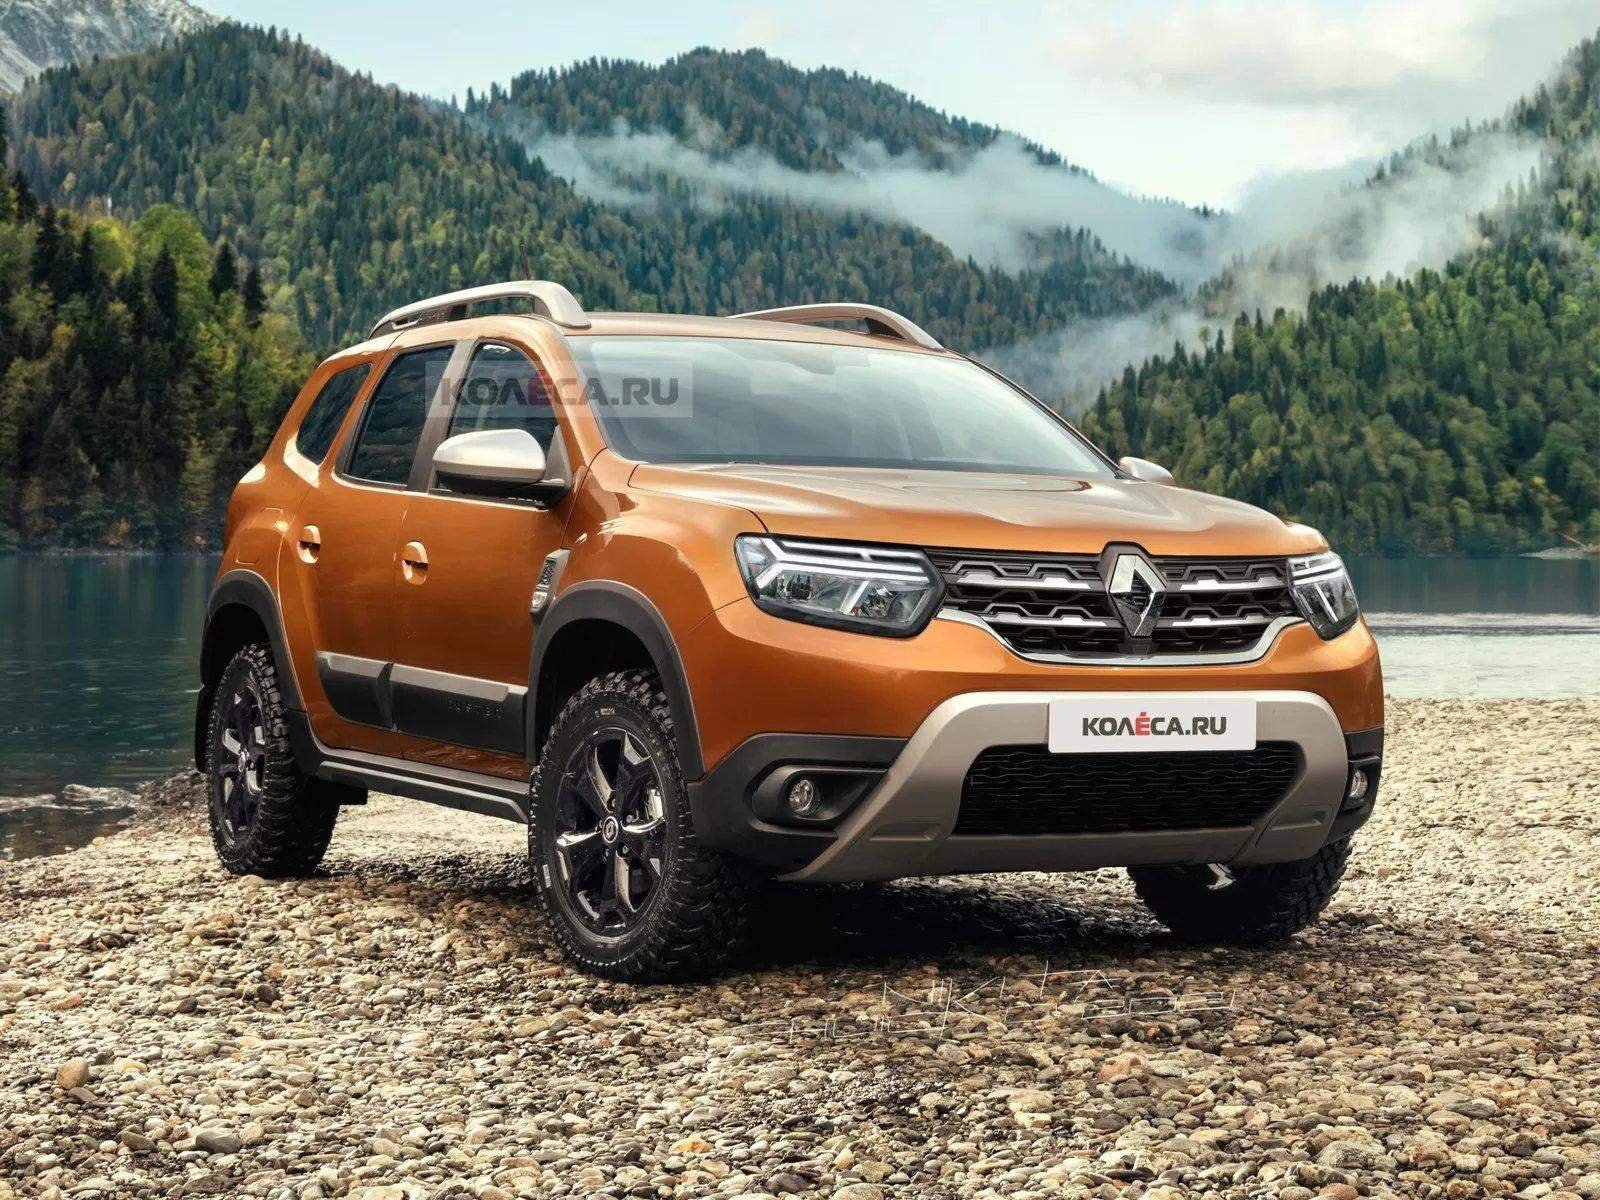 Первый живой обзор нового Renault Duster 2018 +видео